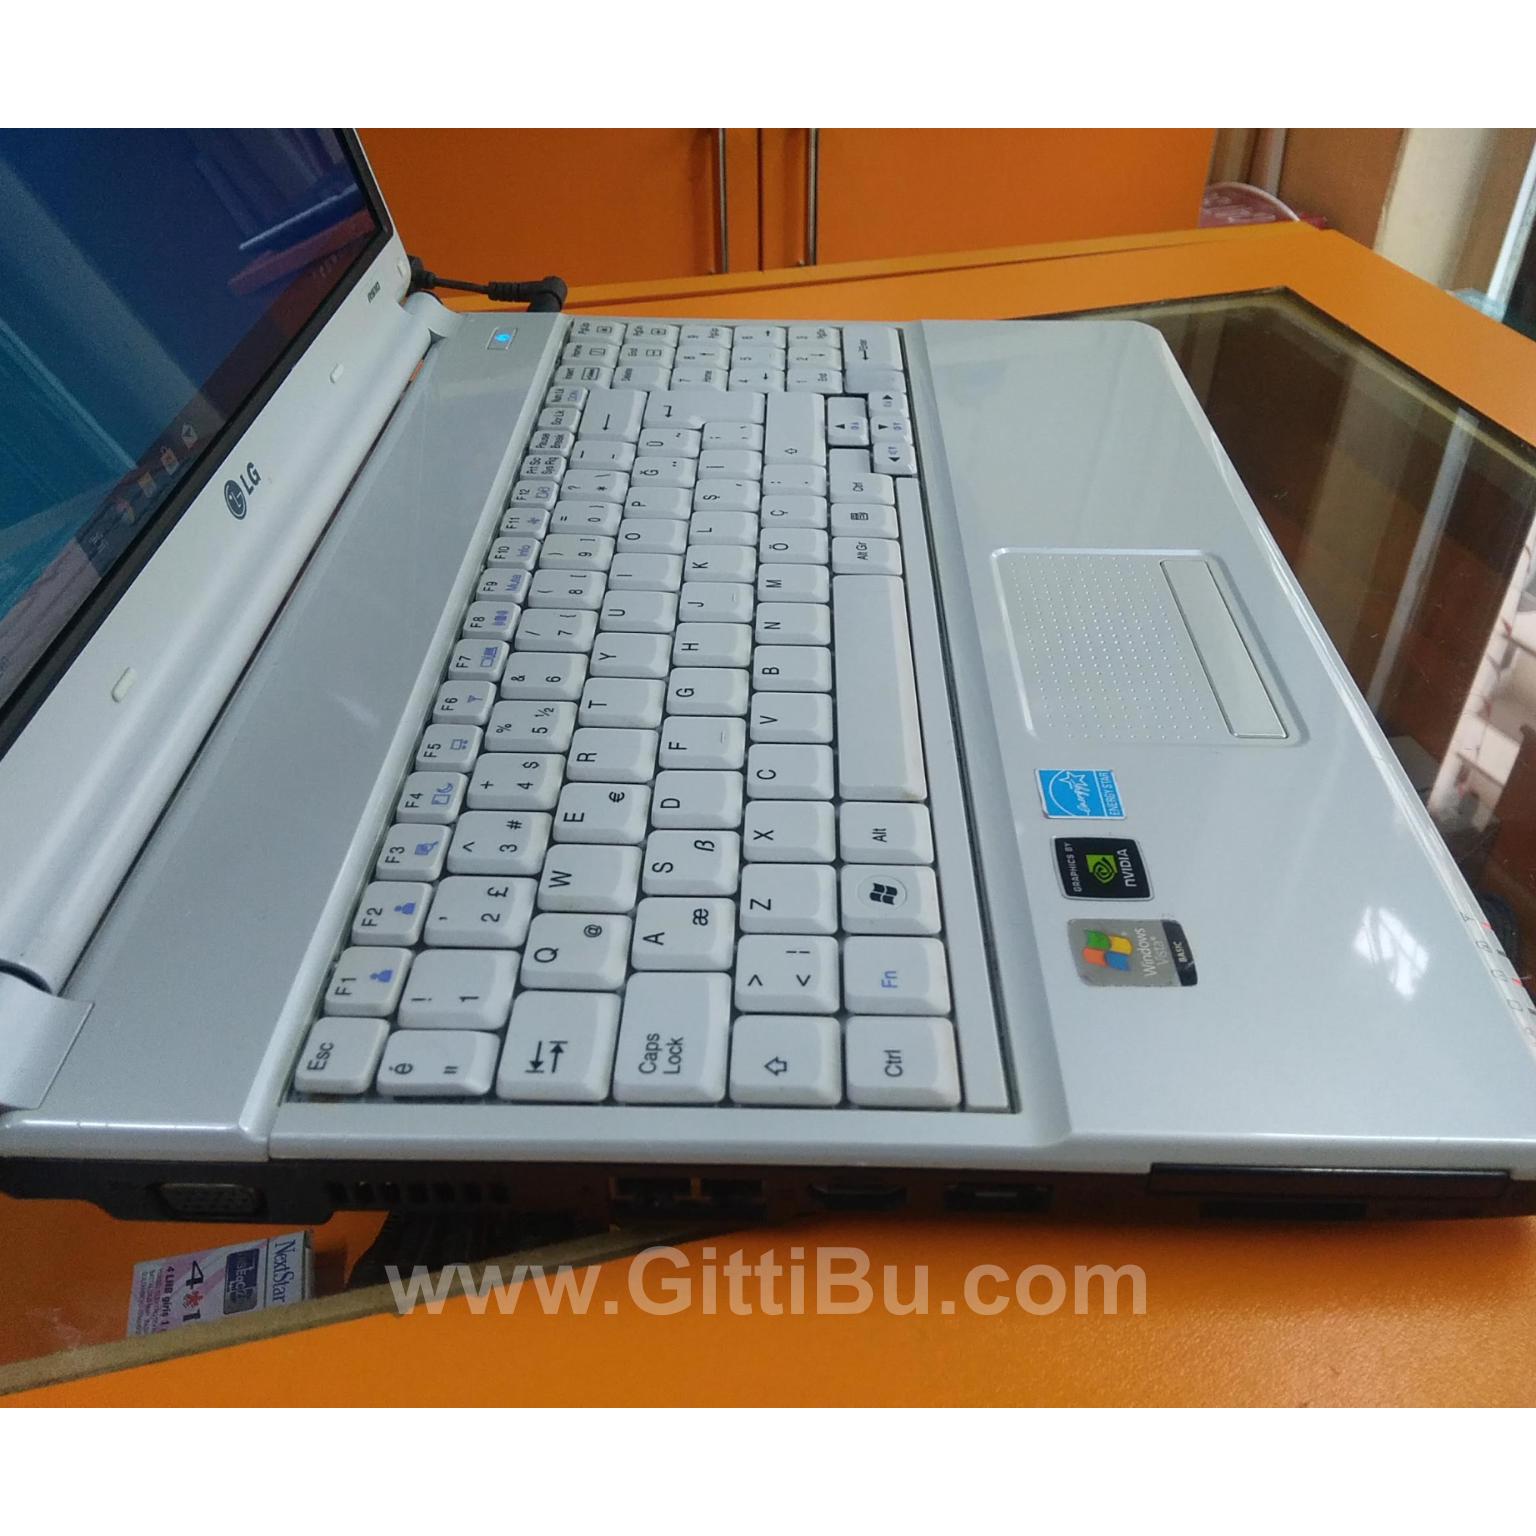 Lg R510 Laptop